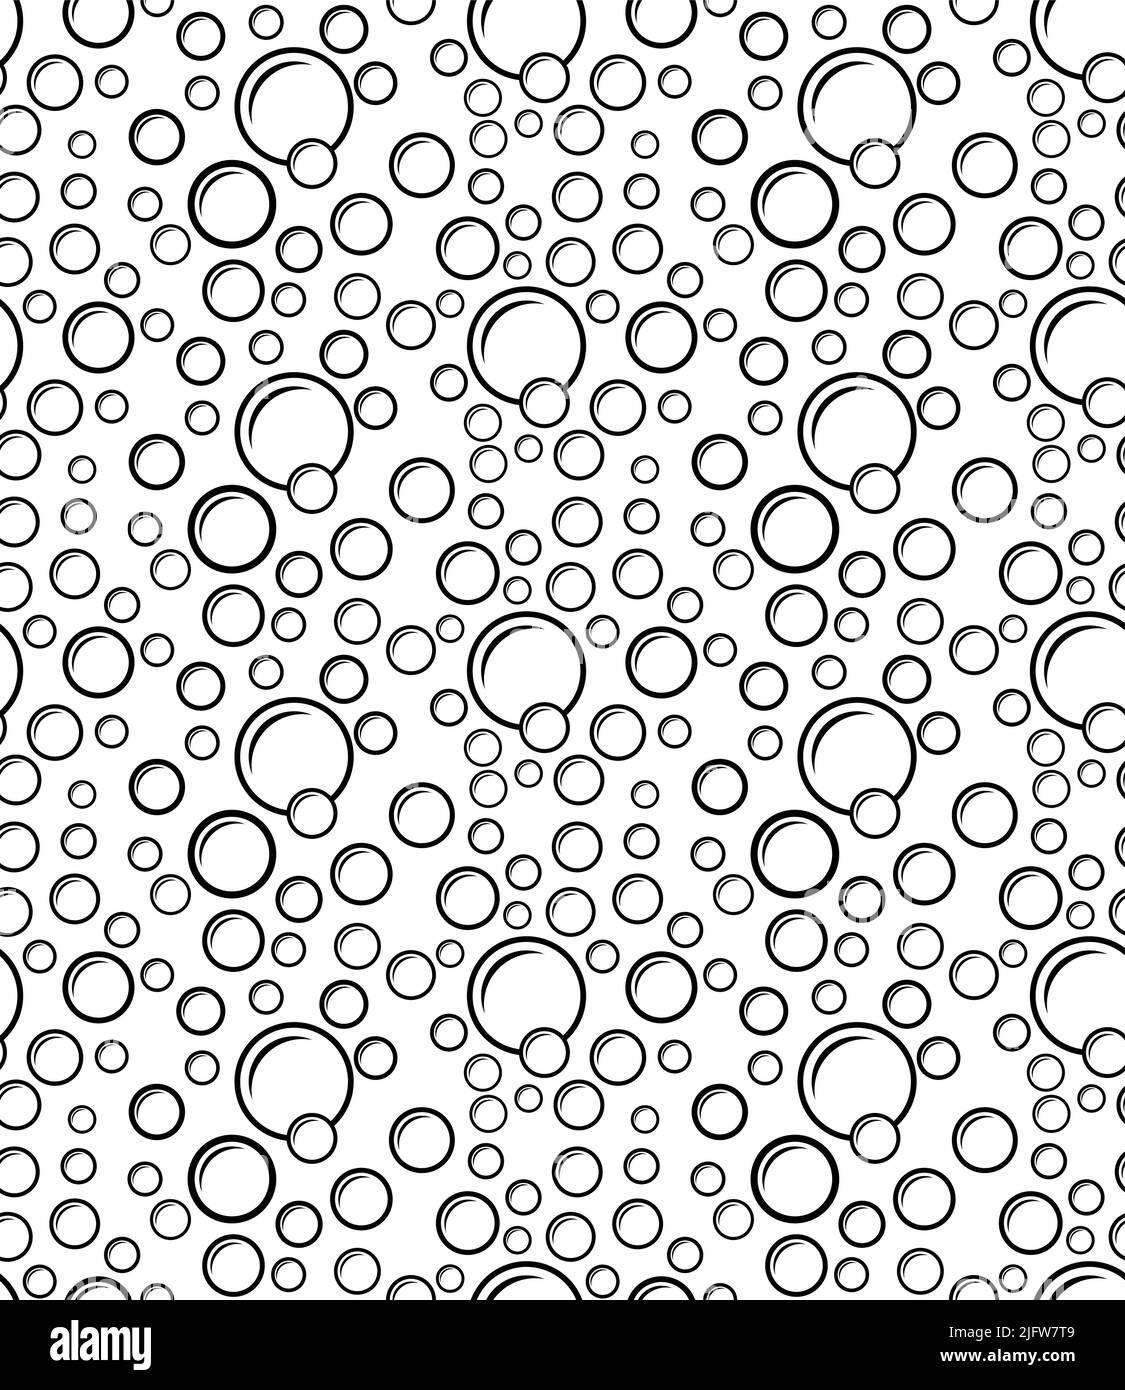 Bubble Icon Seamless Pattern Vector Art Illustration Stock Vector